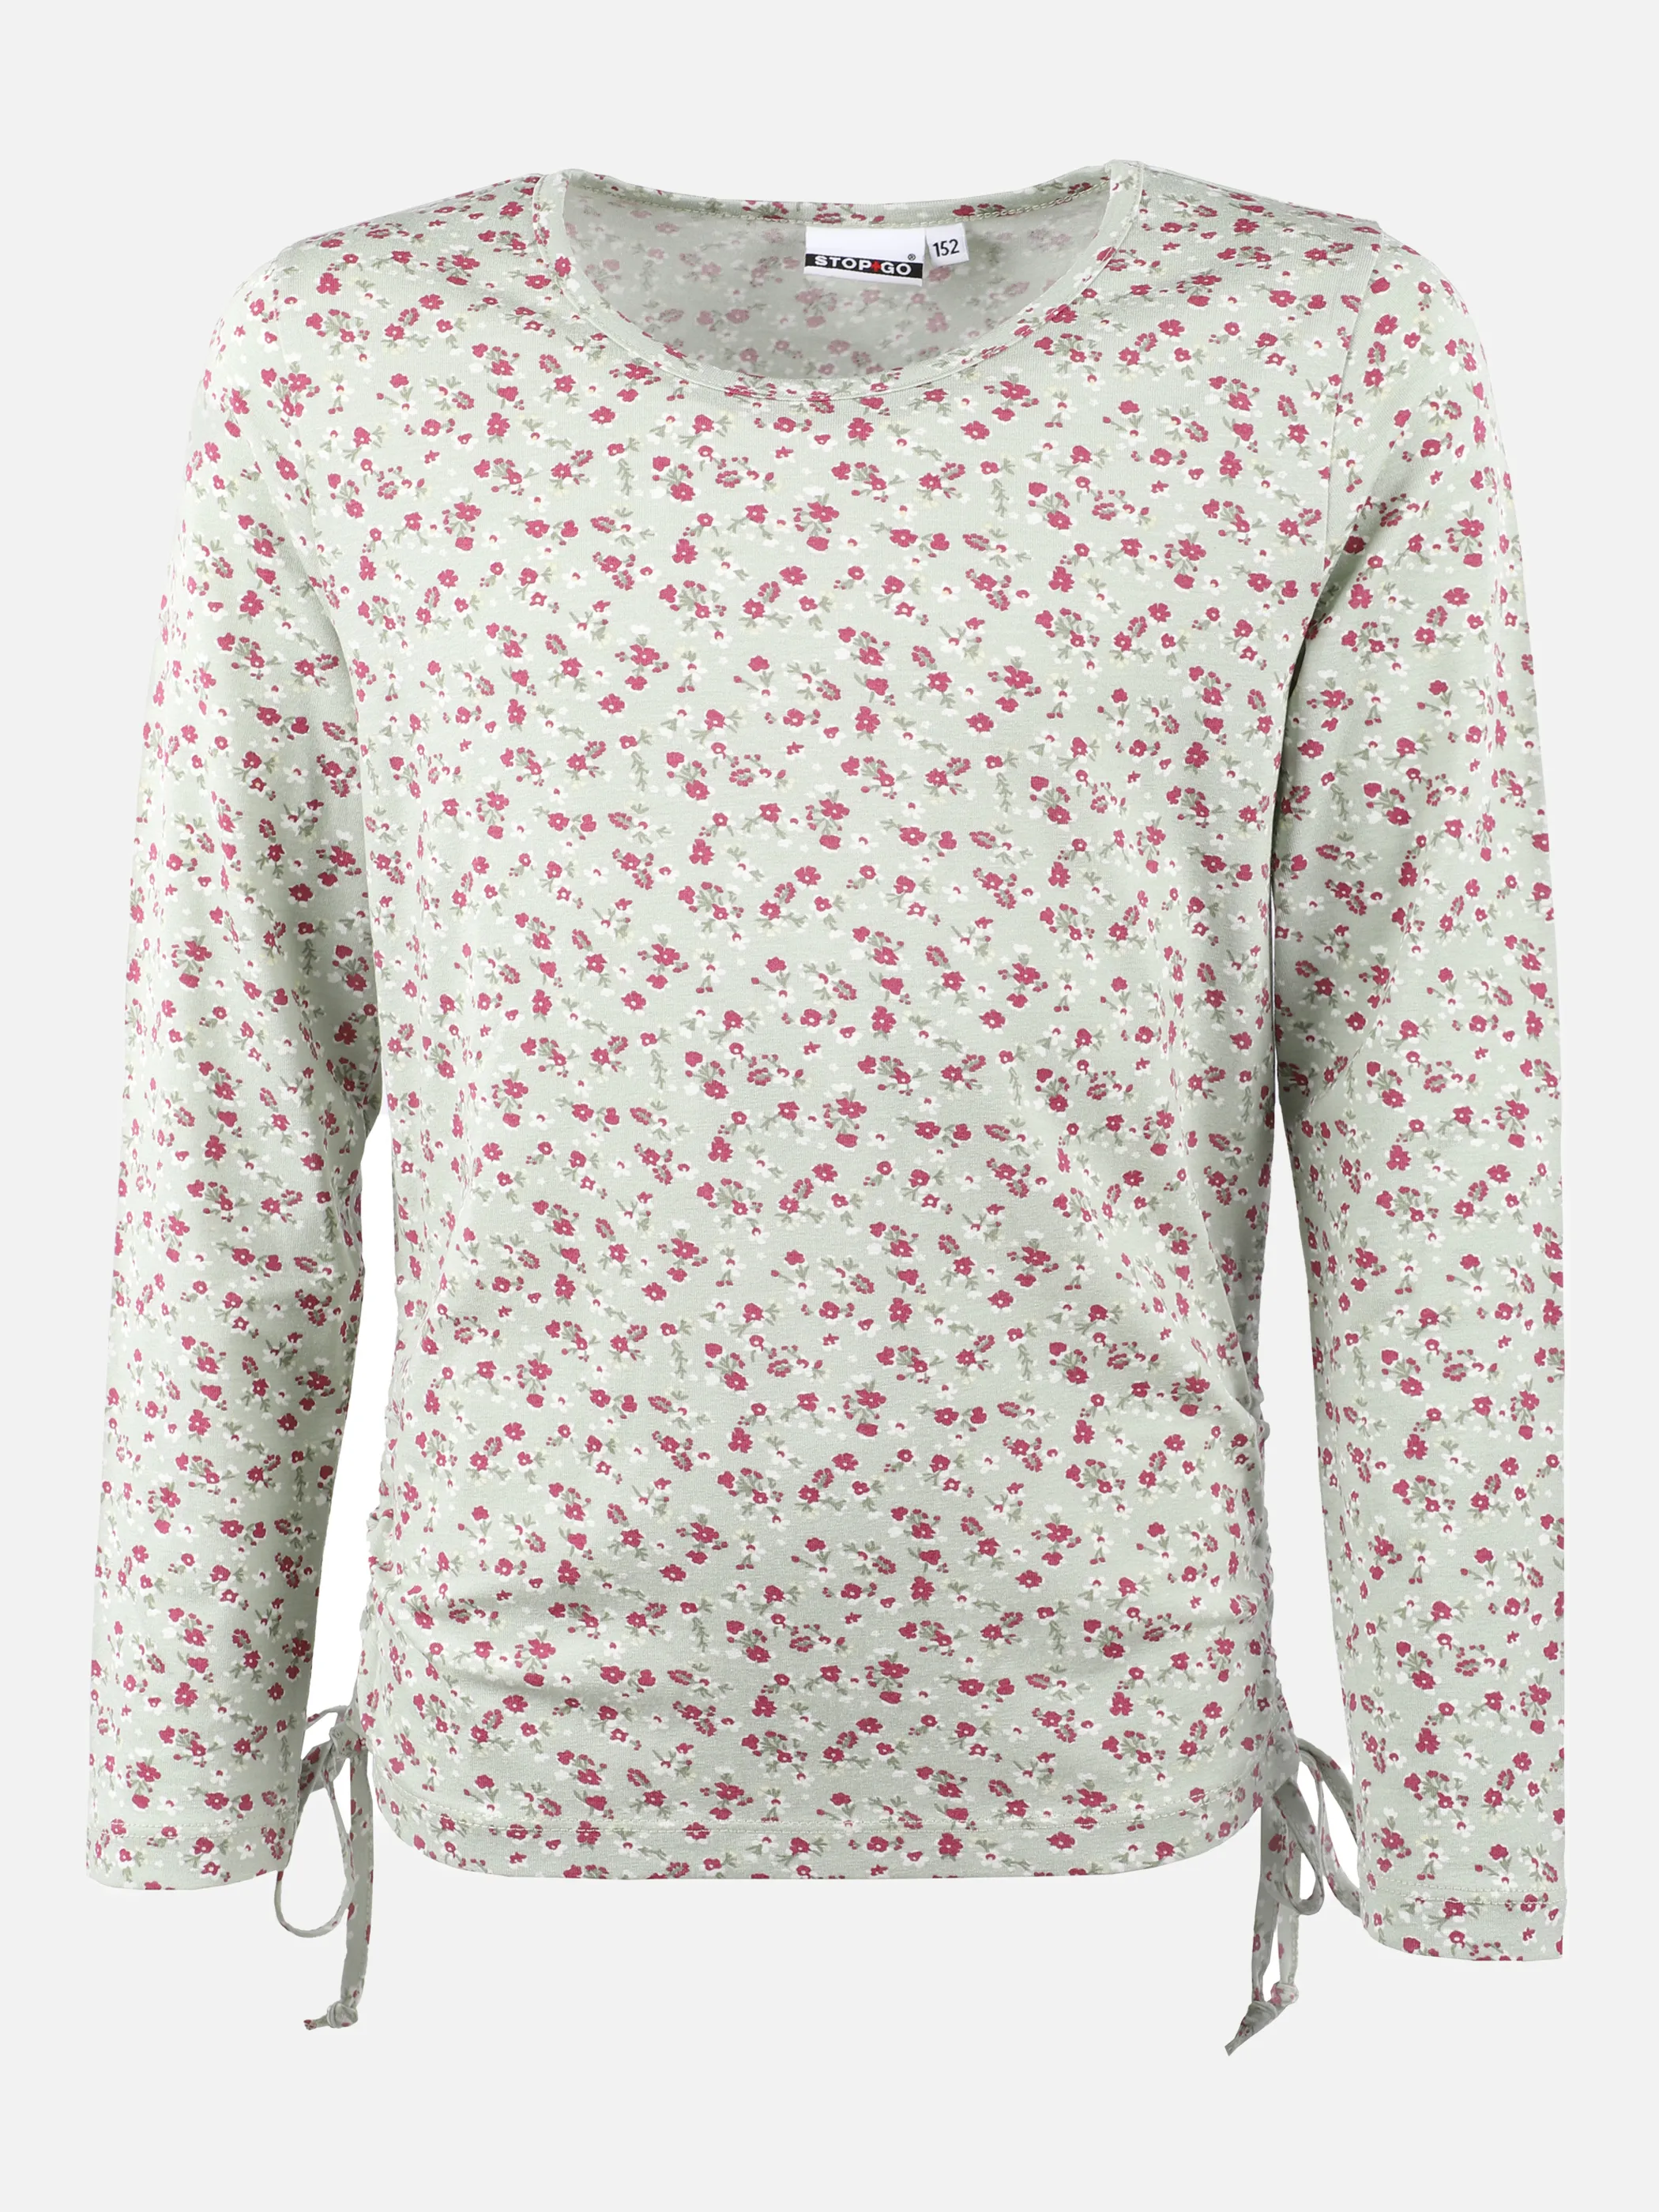 Stop + Go TG Longsleeve Shirt in rose Rosa 871271 ROSA 1